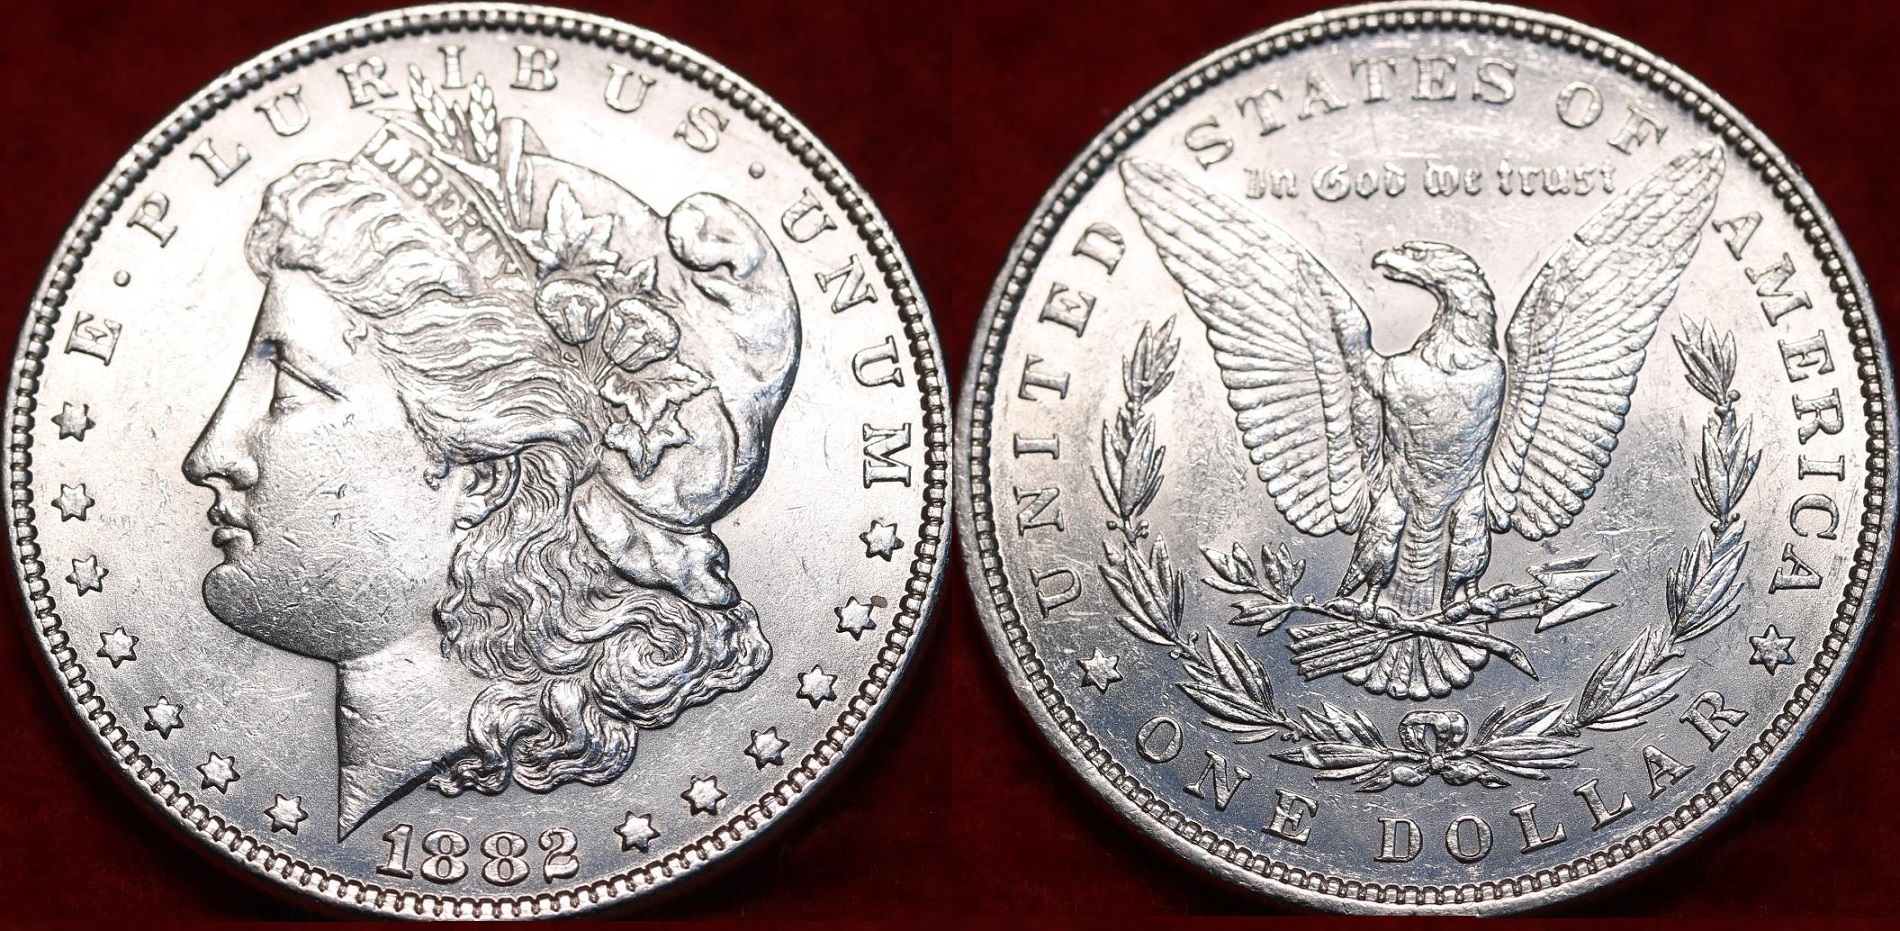 1882 Silver Morgan Dollar  $36.01 + $2.  vette1986  362510447031 o.jpg